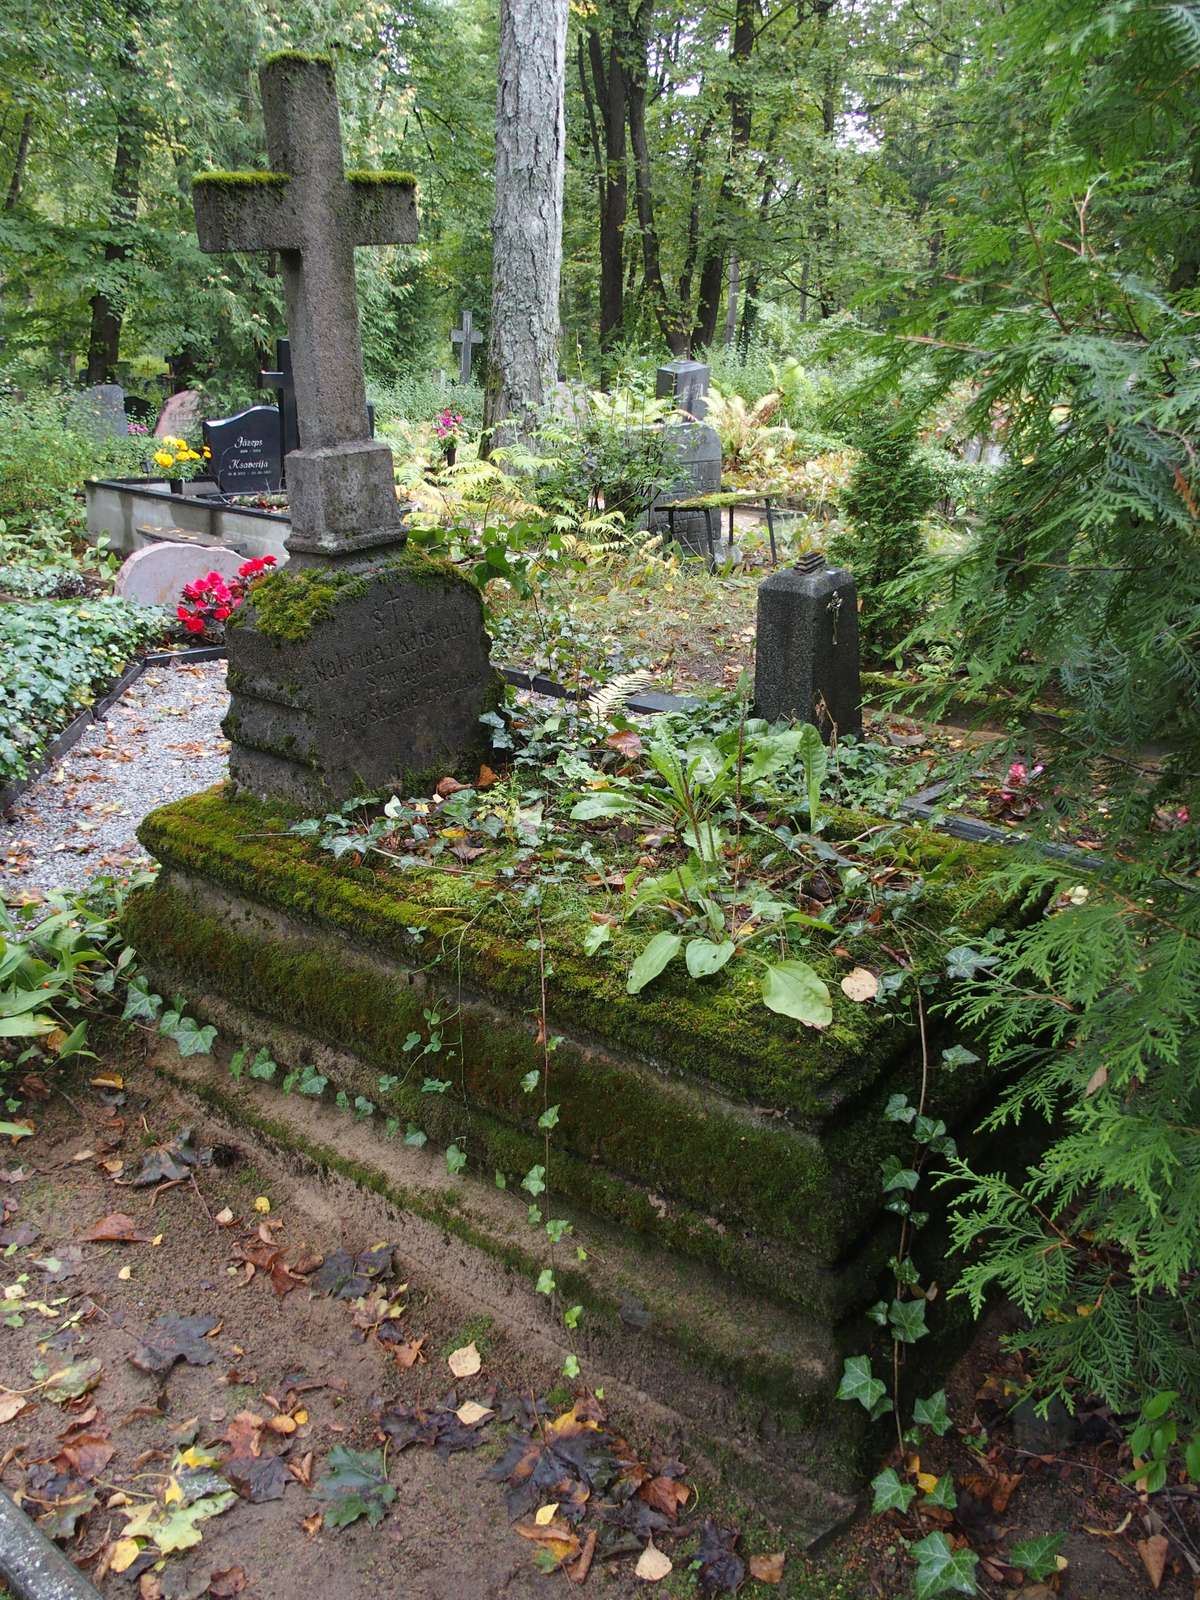 Tombstone of Malwina Szwaglis and Konstanty Szwaglis